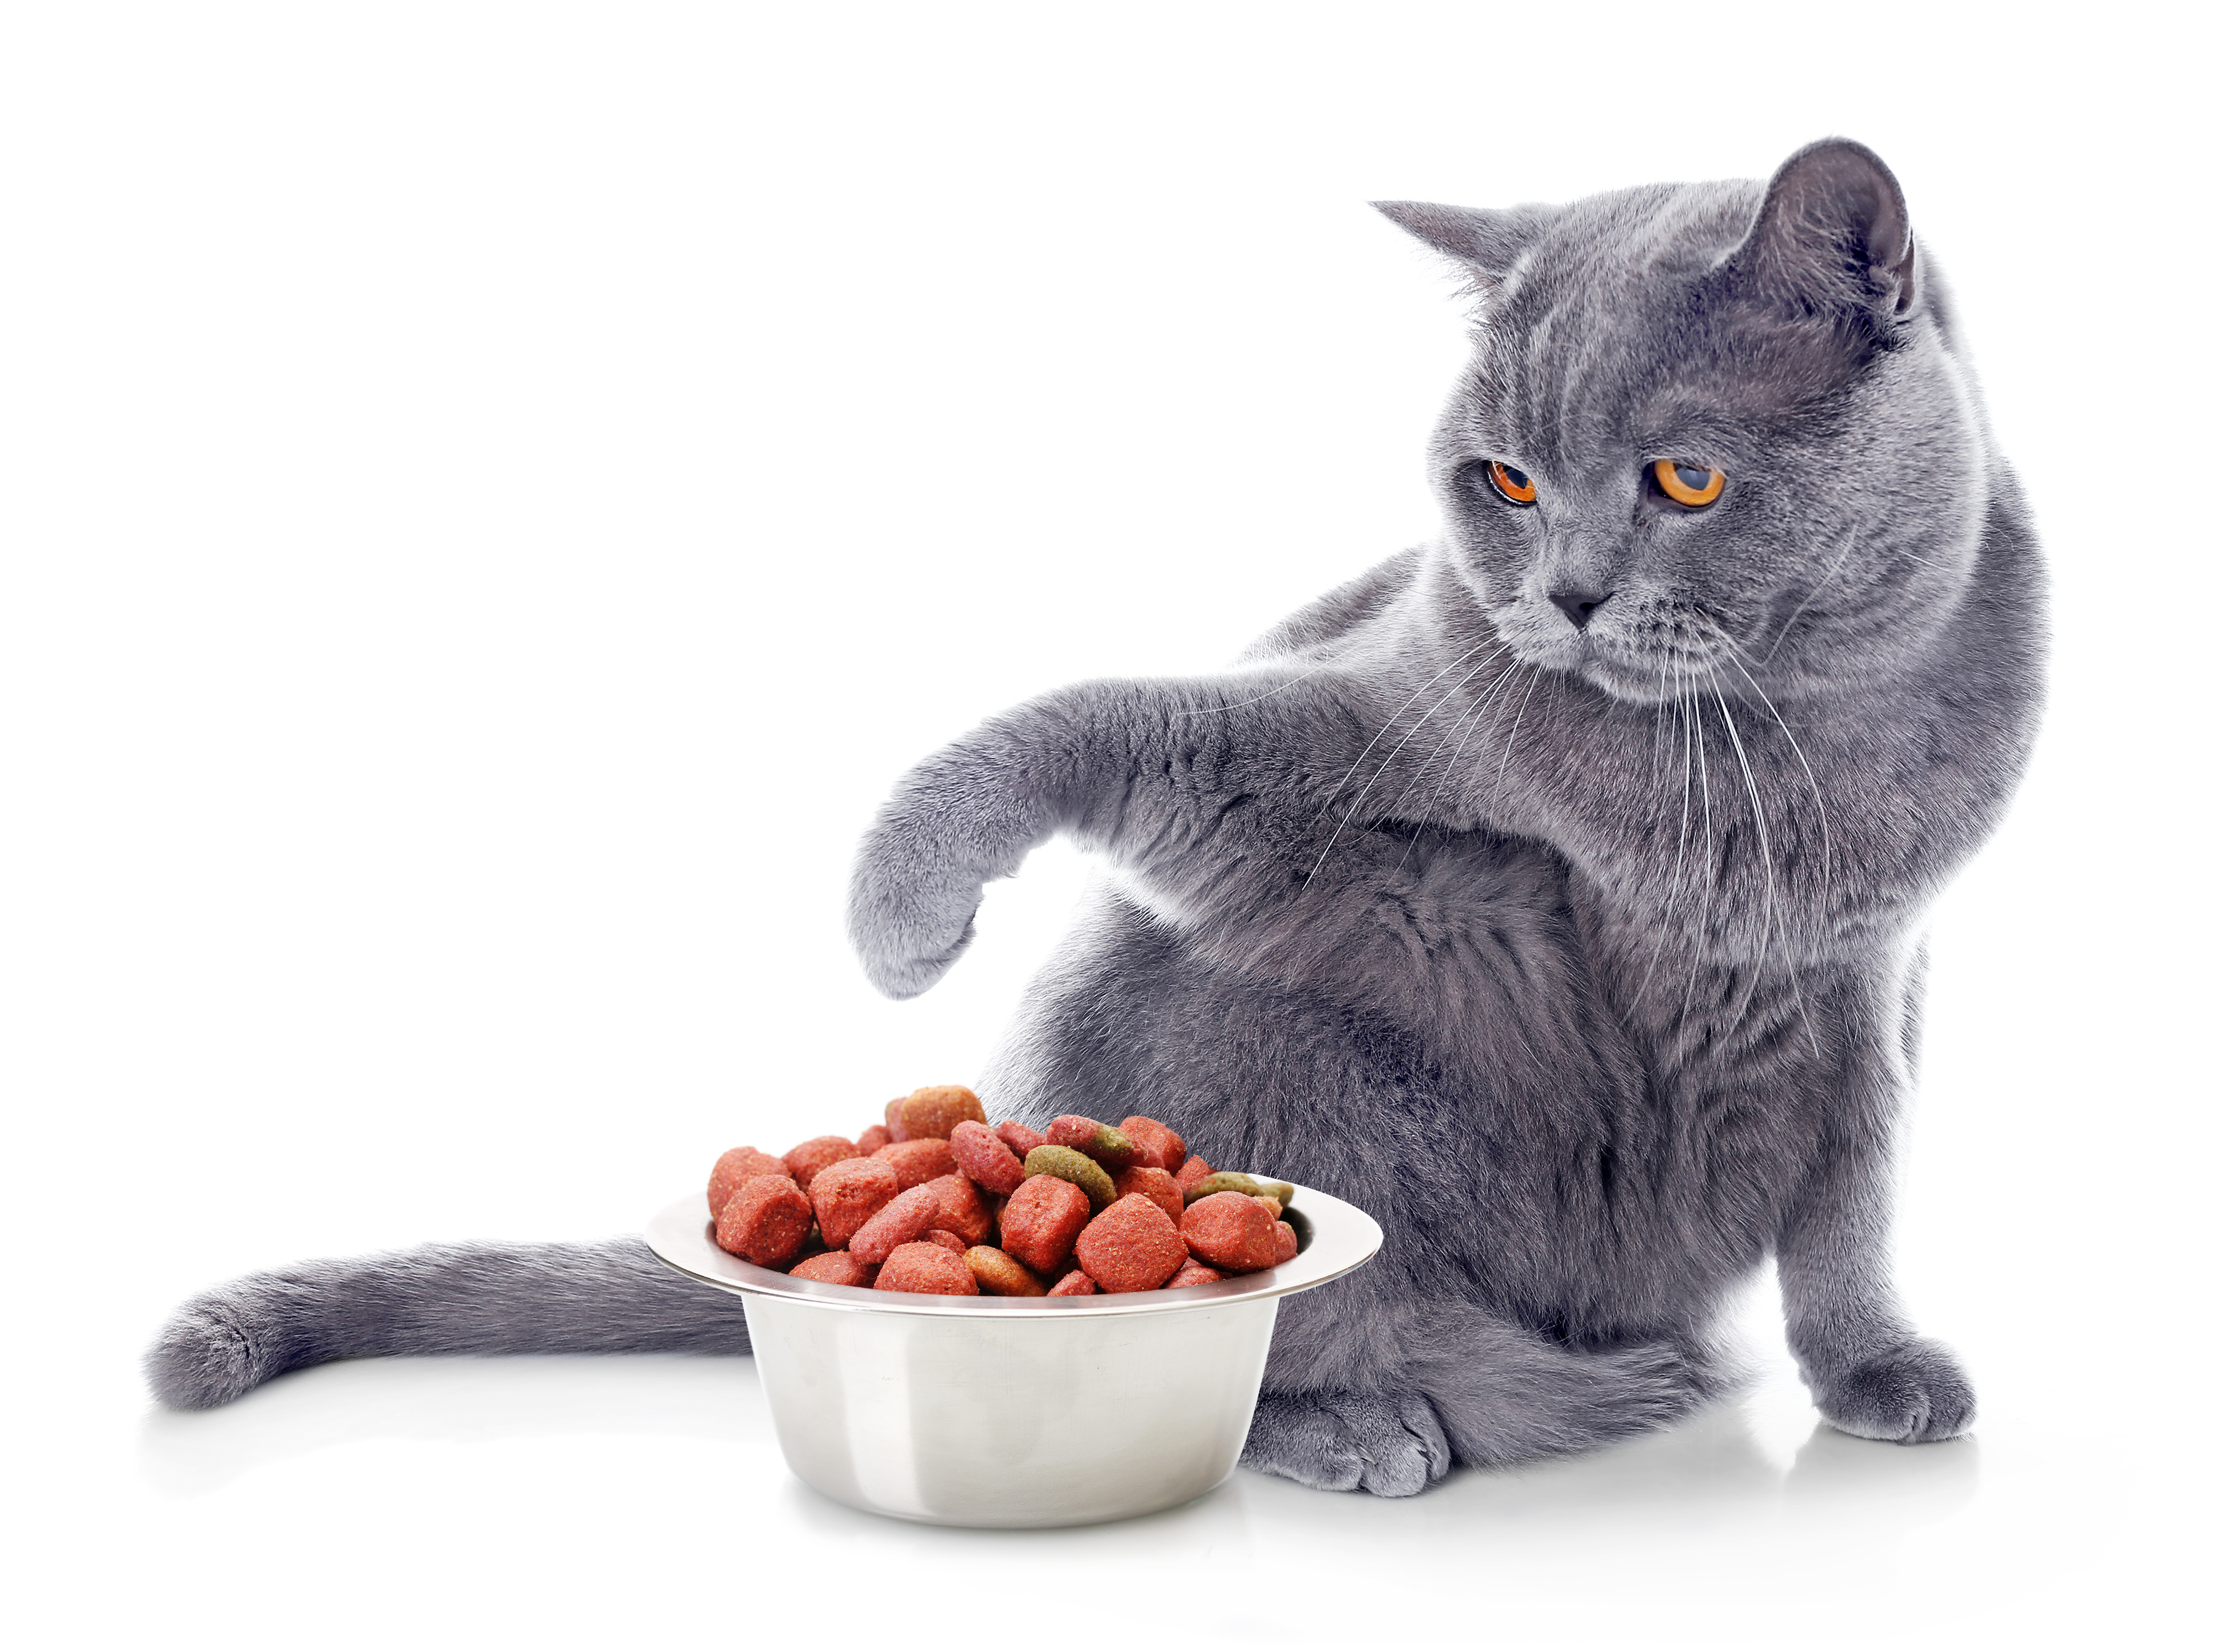 Cambio de alimentación en gatos | Magazine para gatos